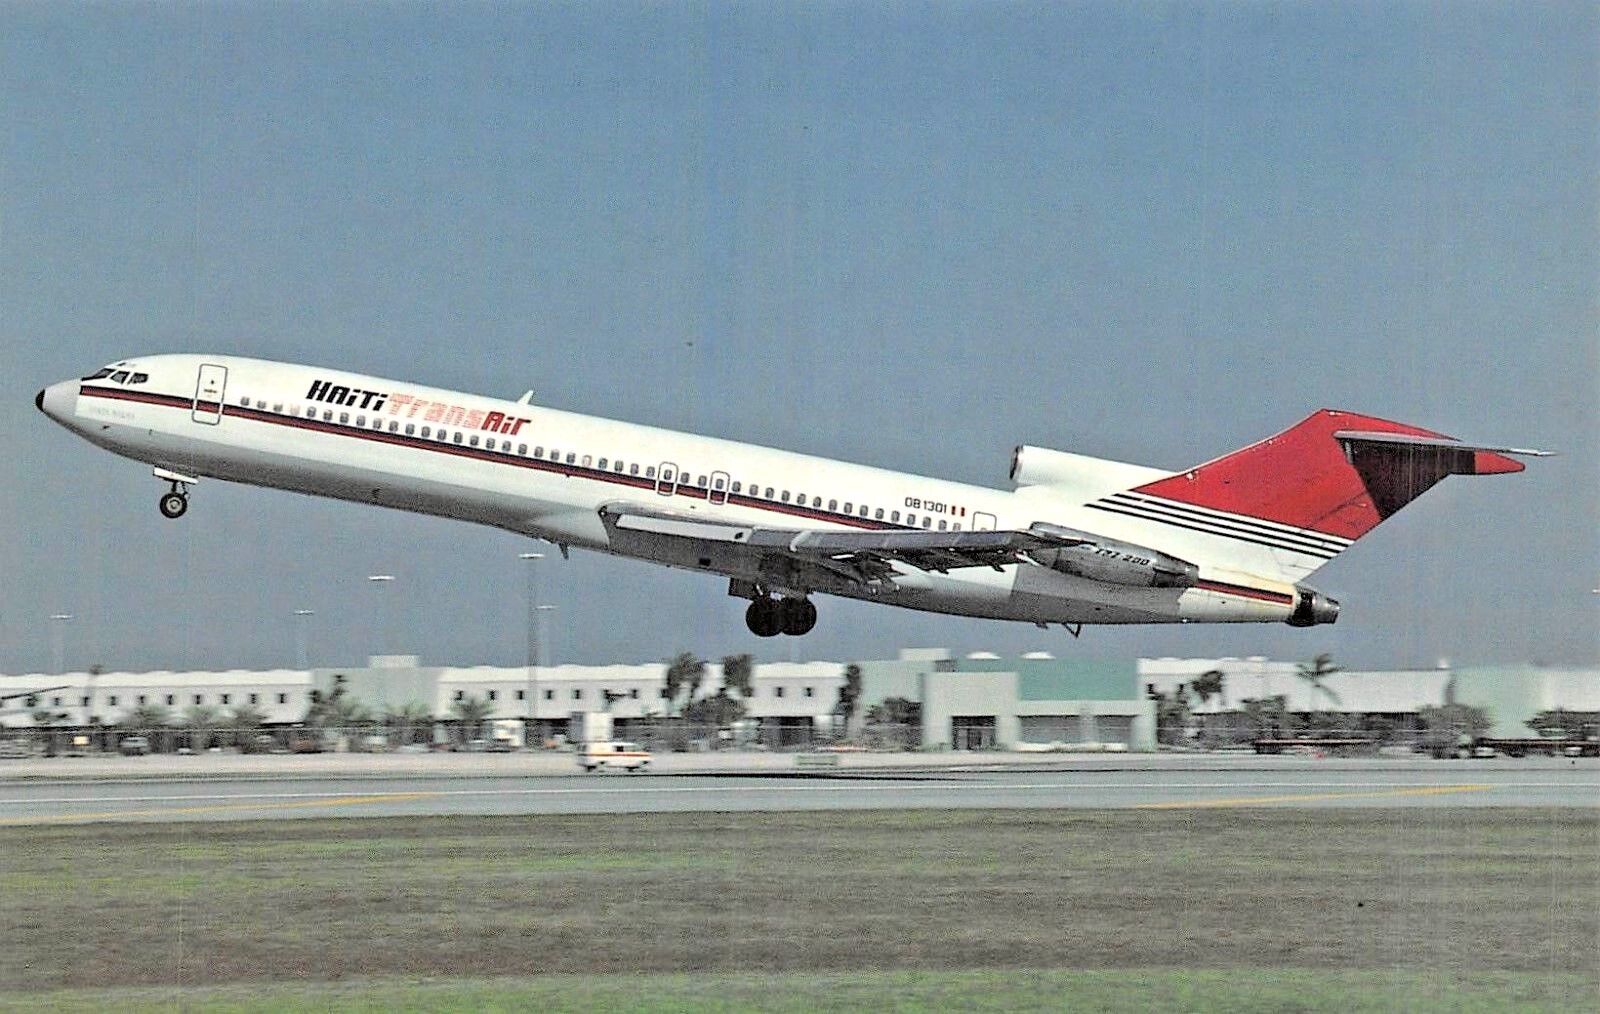 HAITI TRANS AIR Boeing B-727-247 OB-1301 MSN 20263  Airplane Postcard